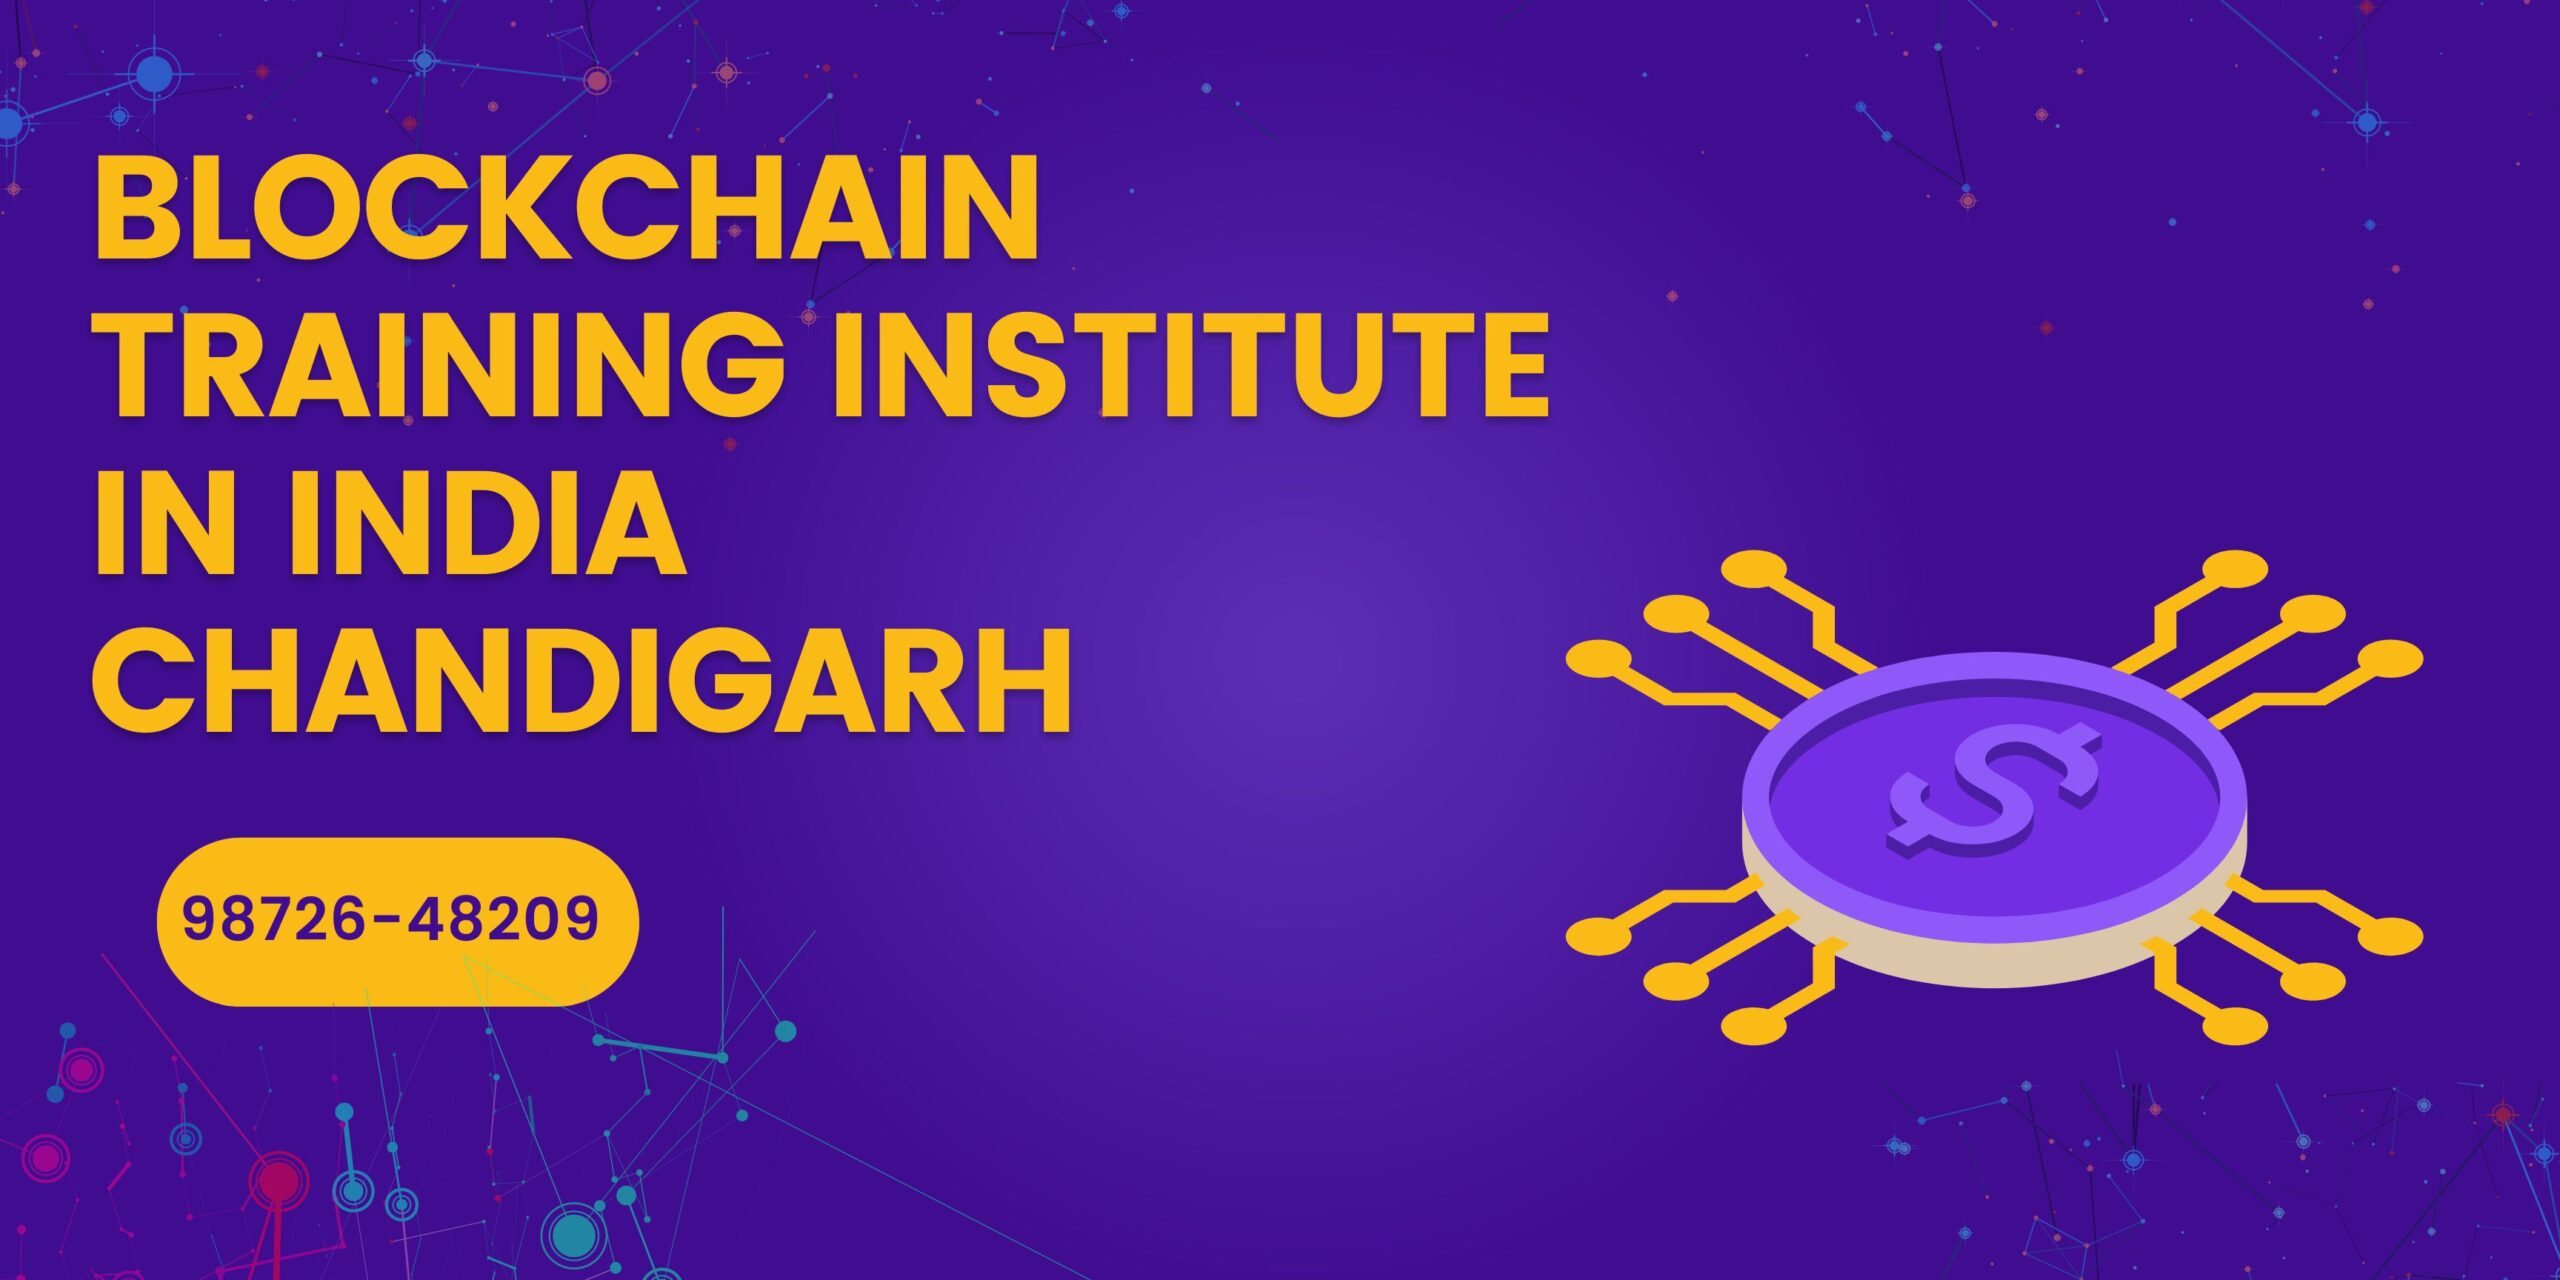 Blockchain Training Institute in India